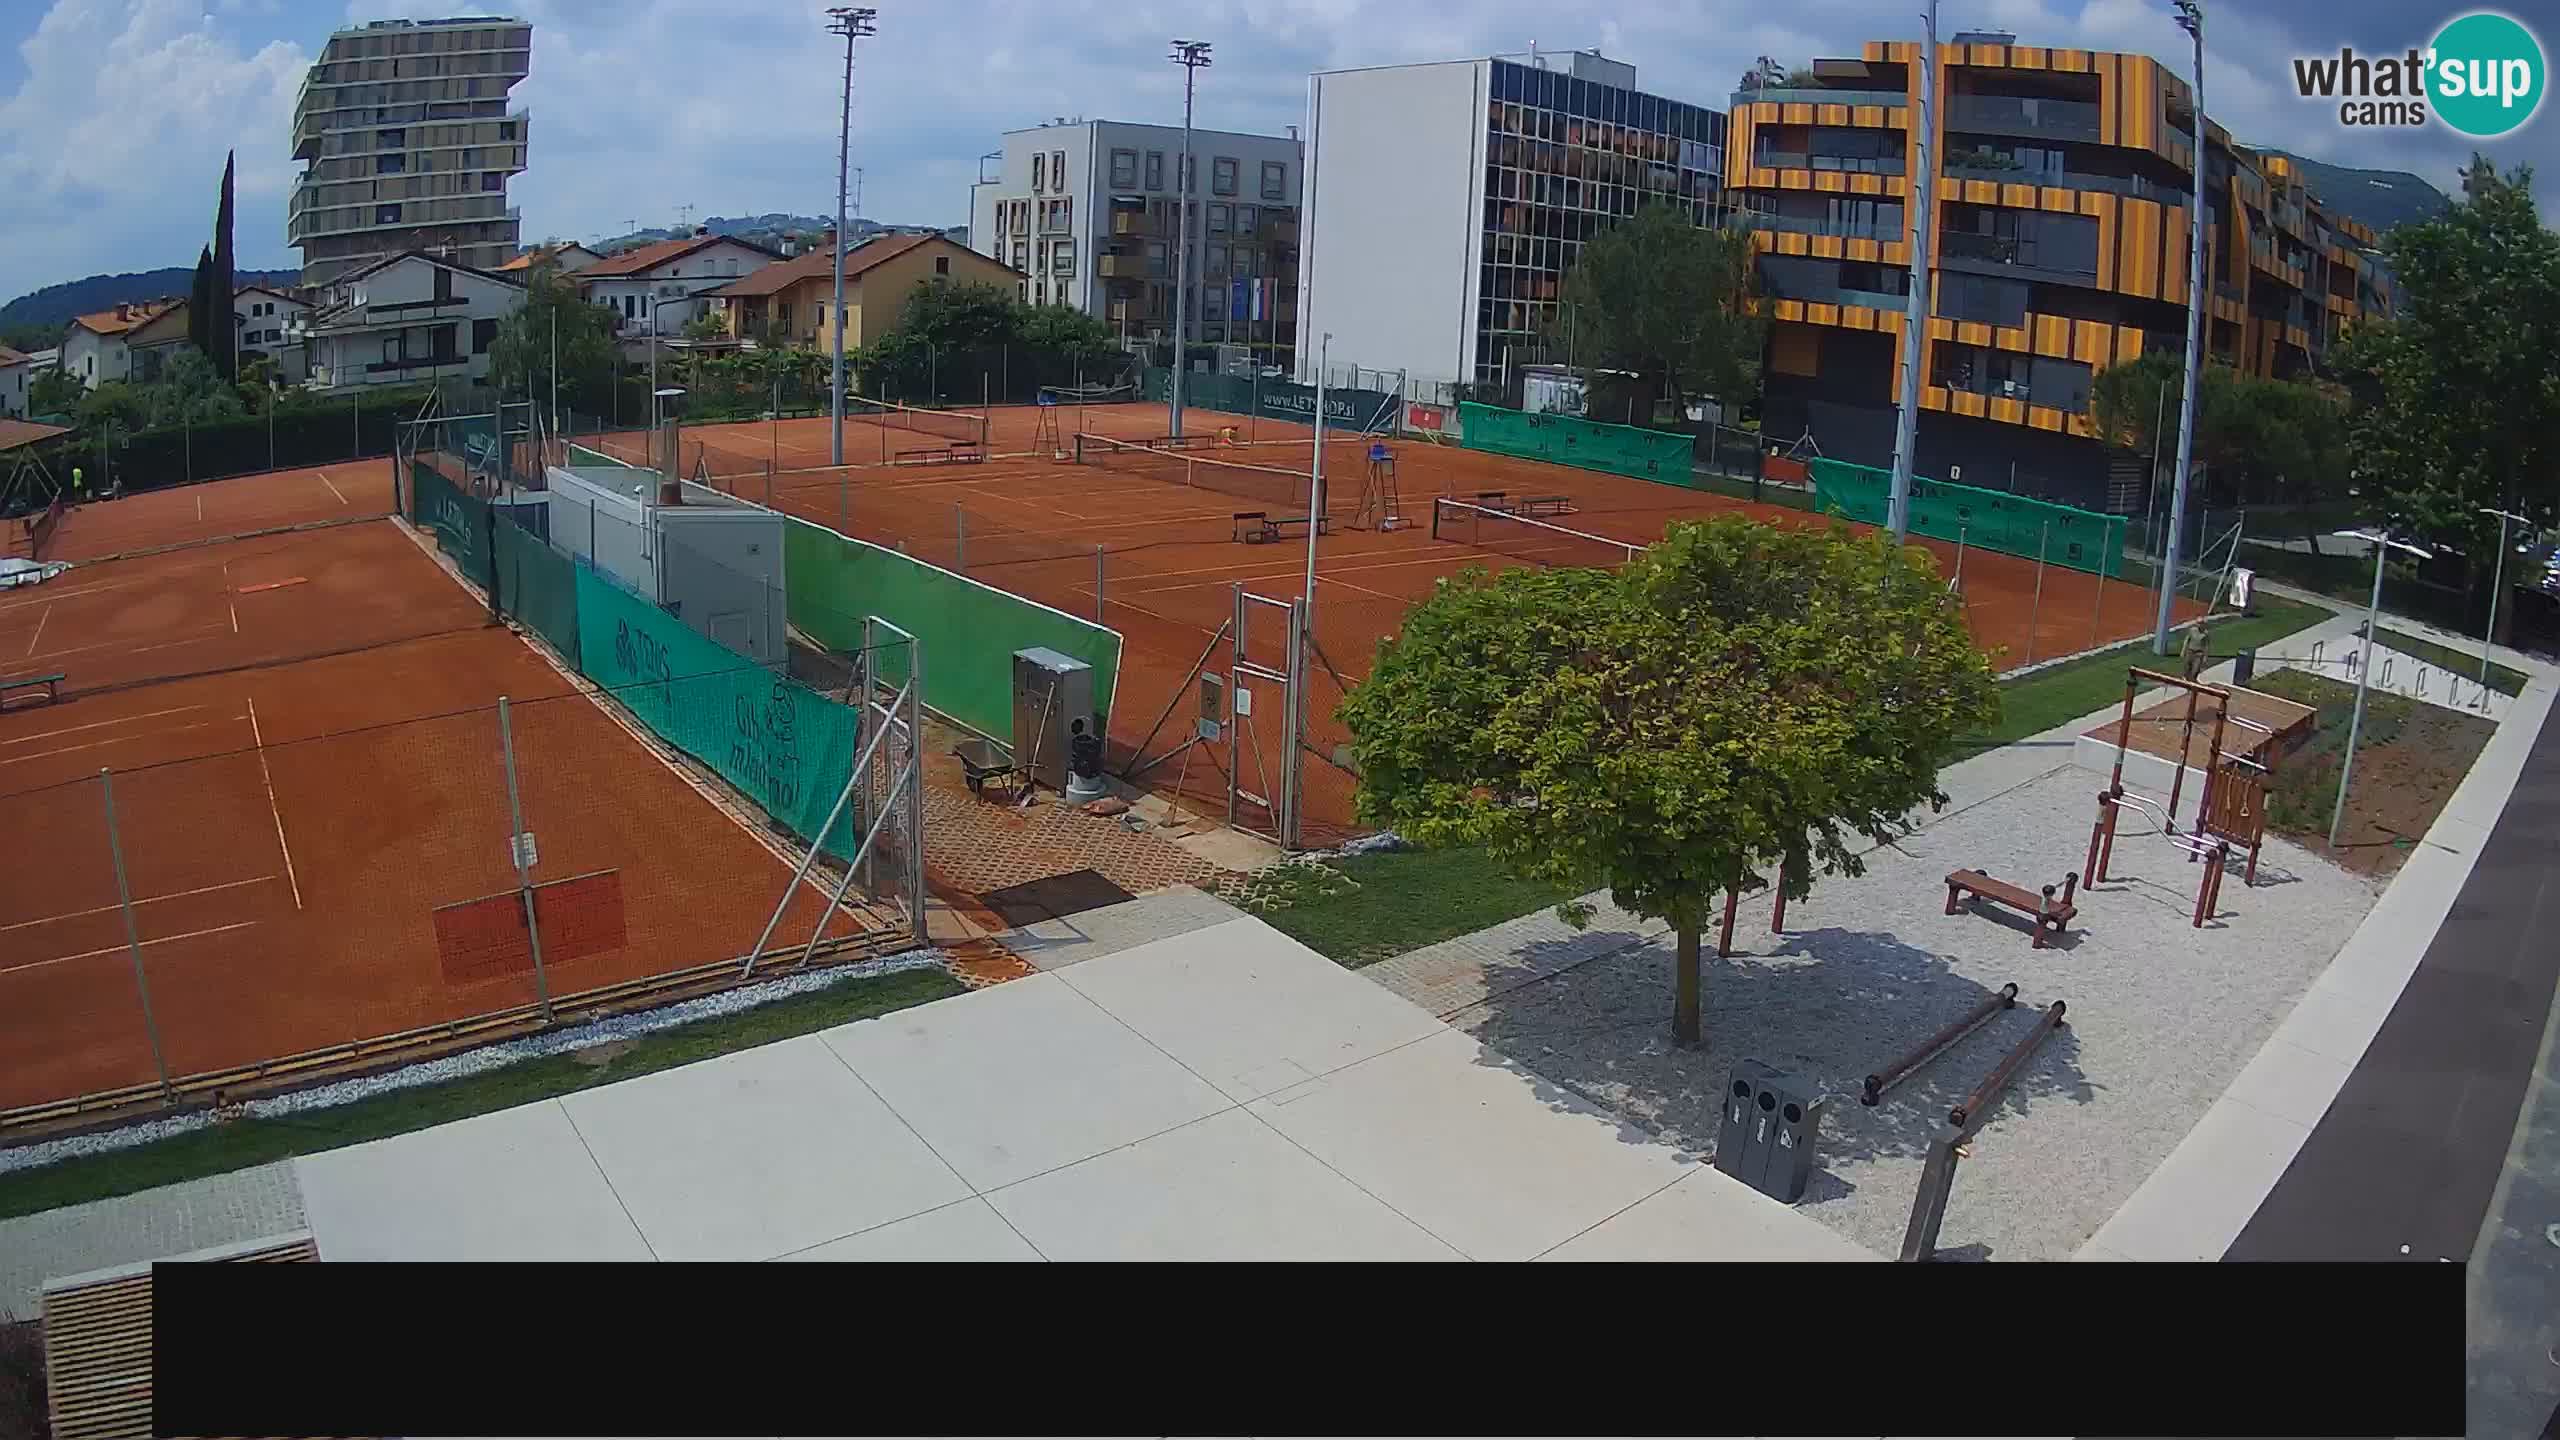 Camera en vivo Tennis Club in Nova Gorica